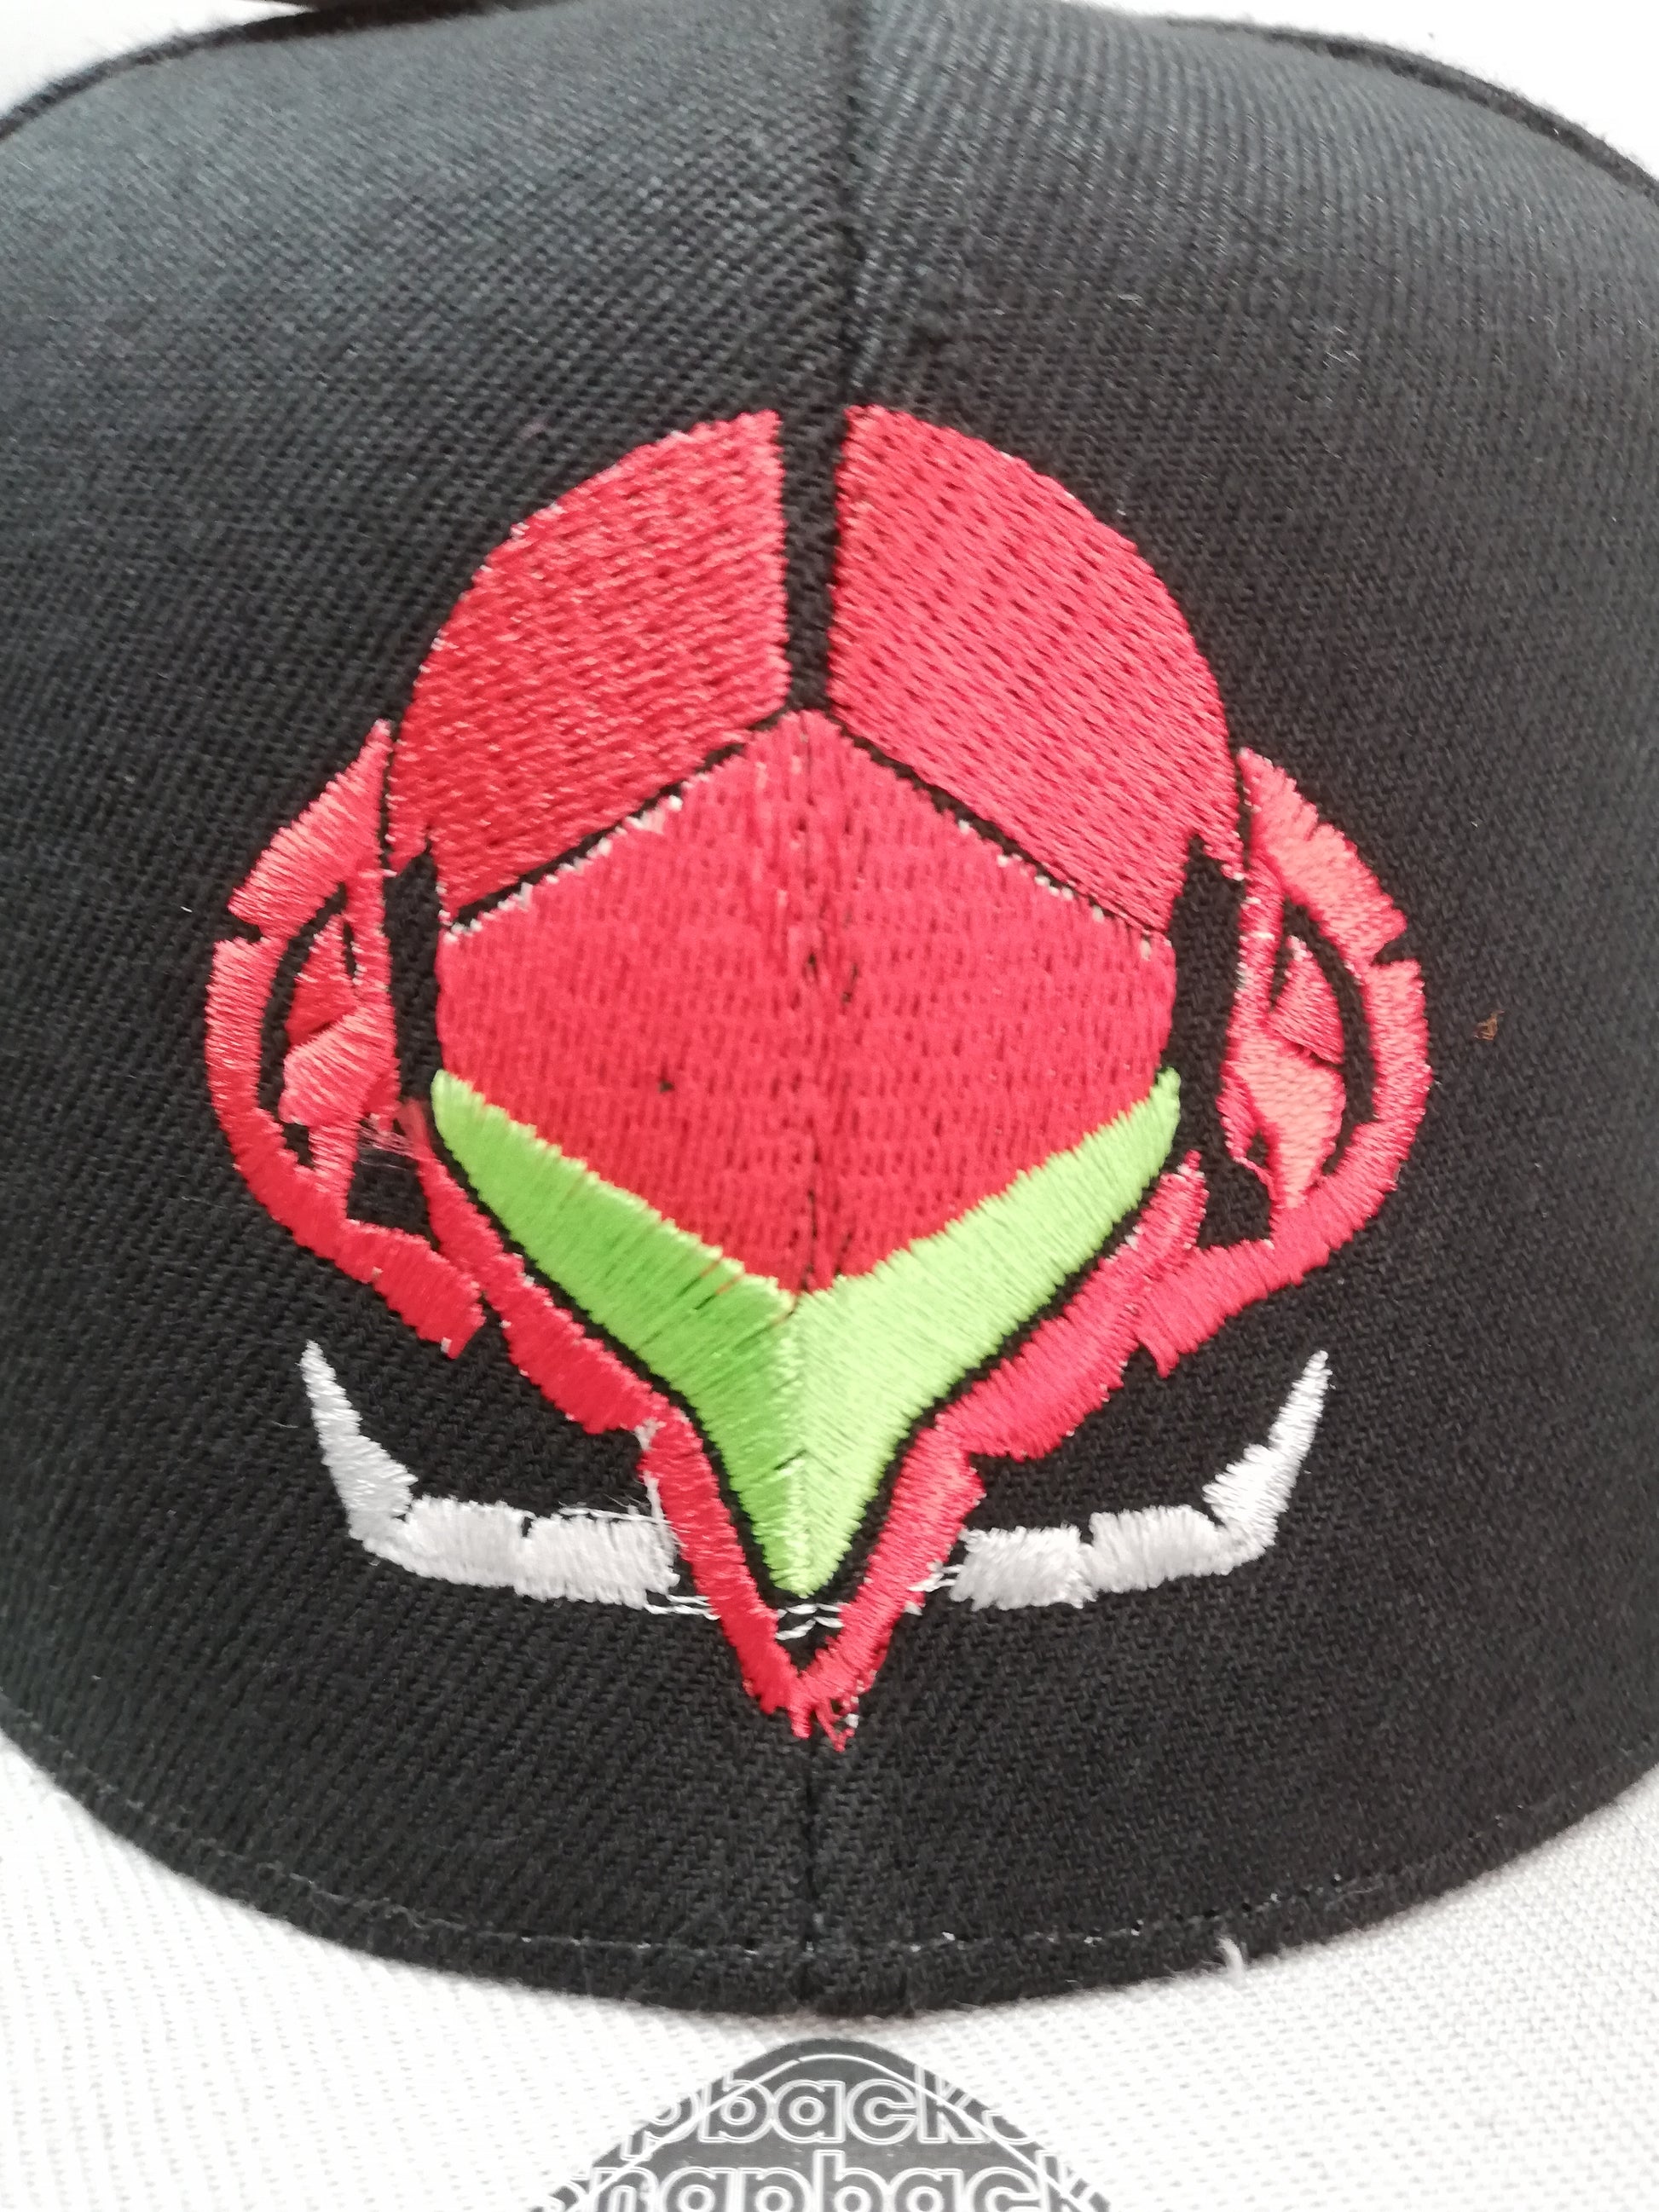 Gorra de Samus Aran del juego Metroid